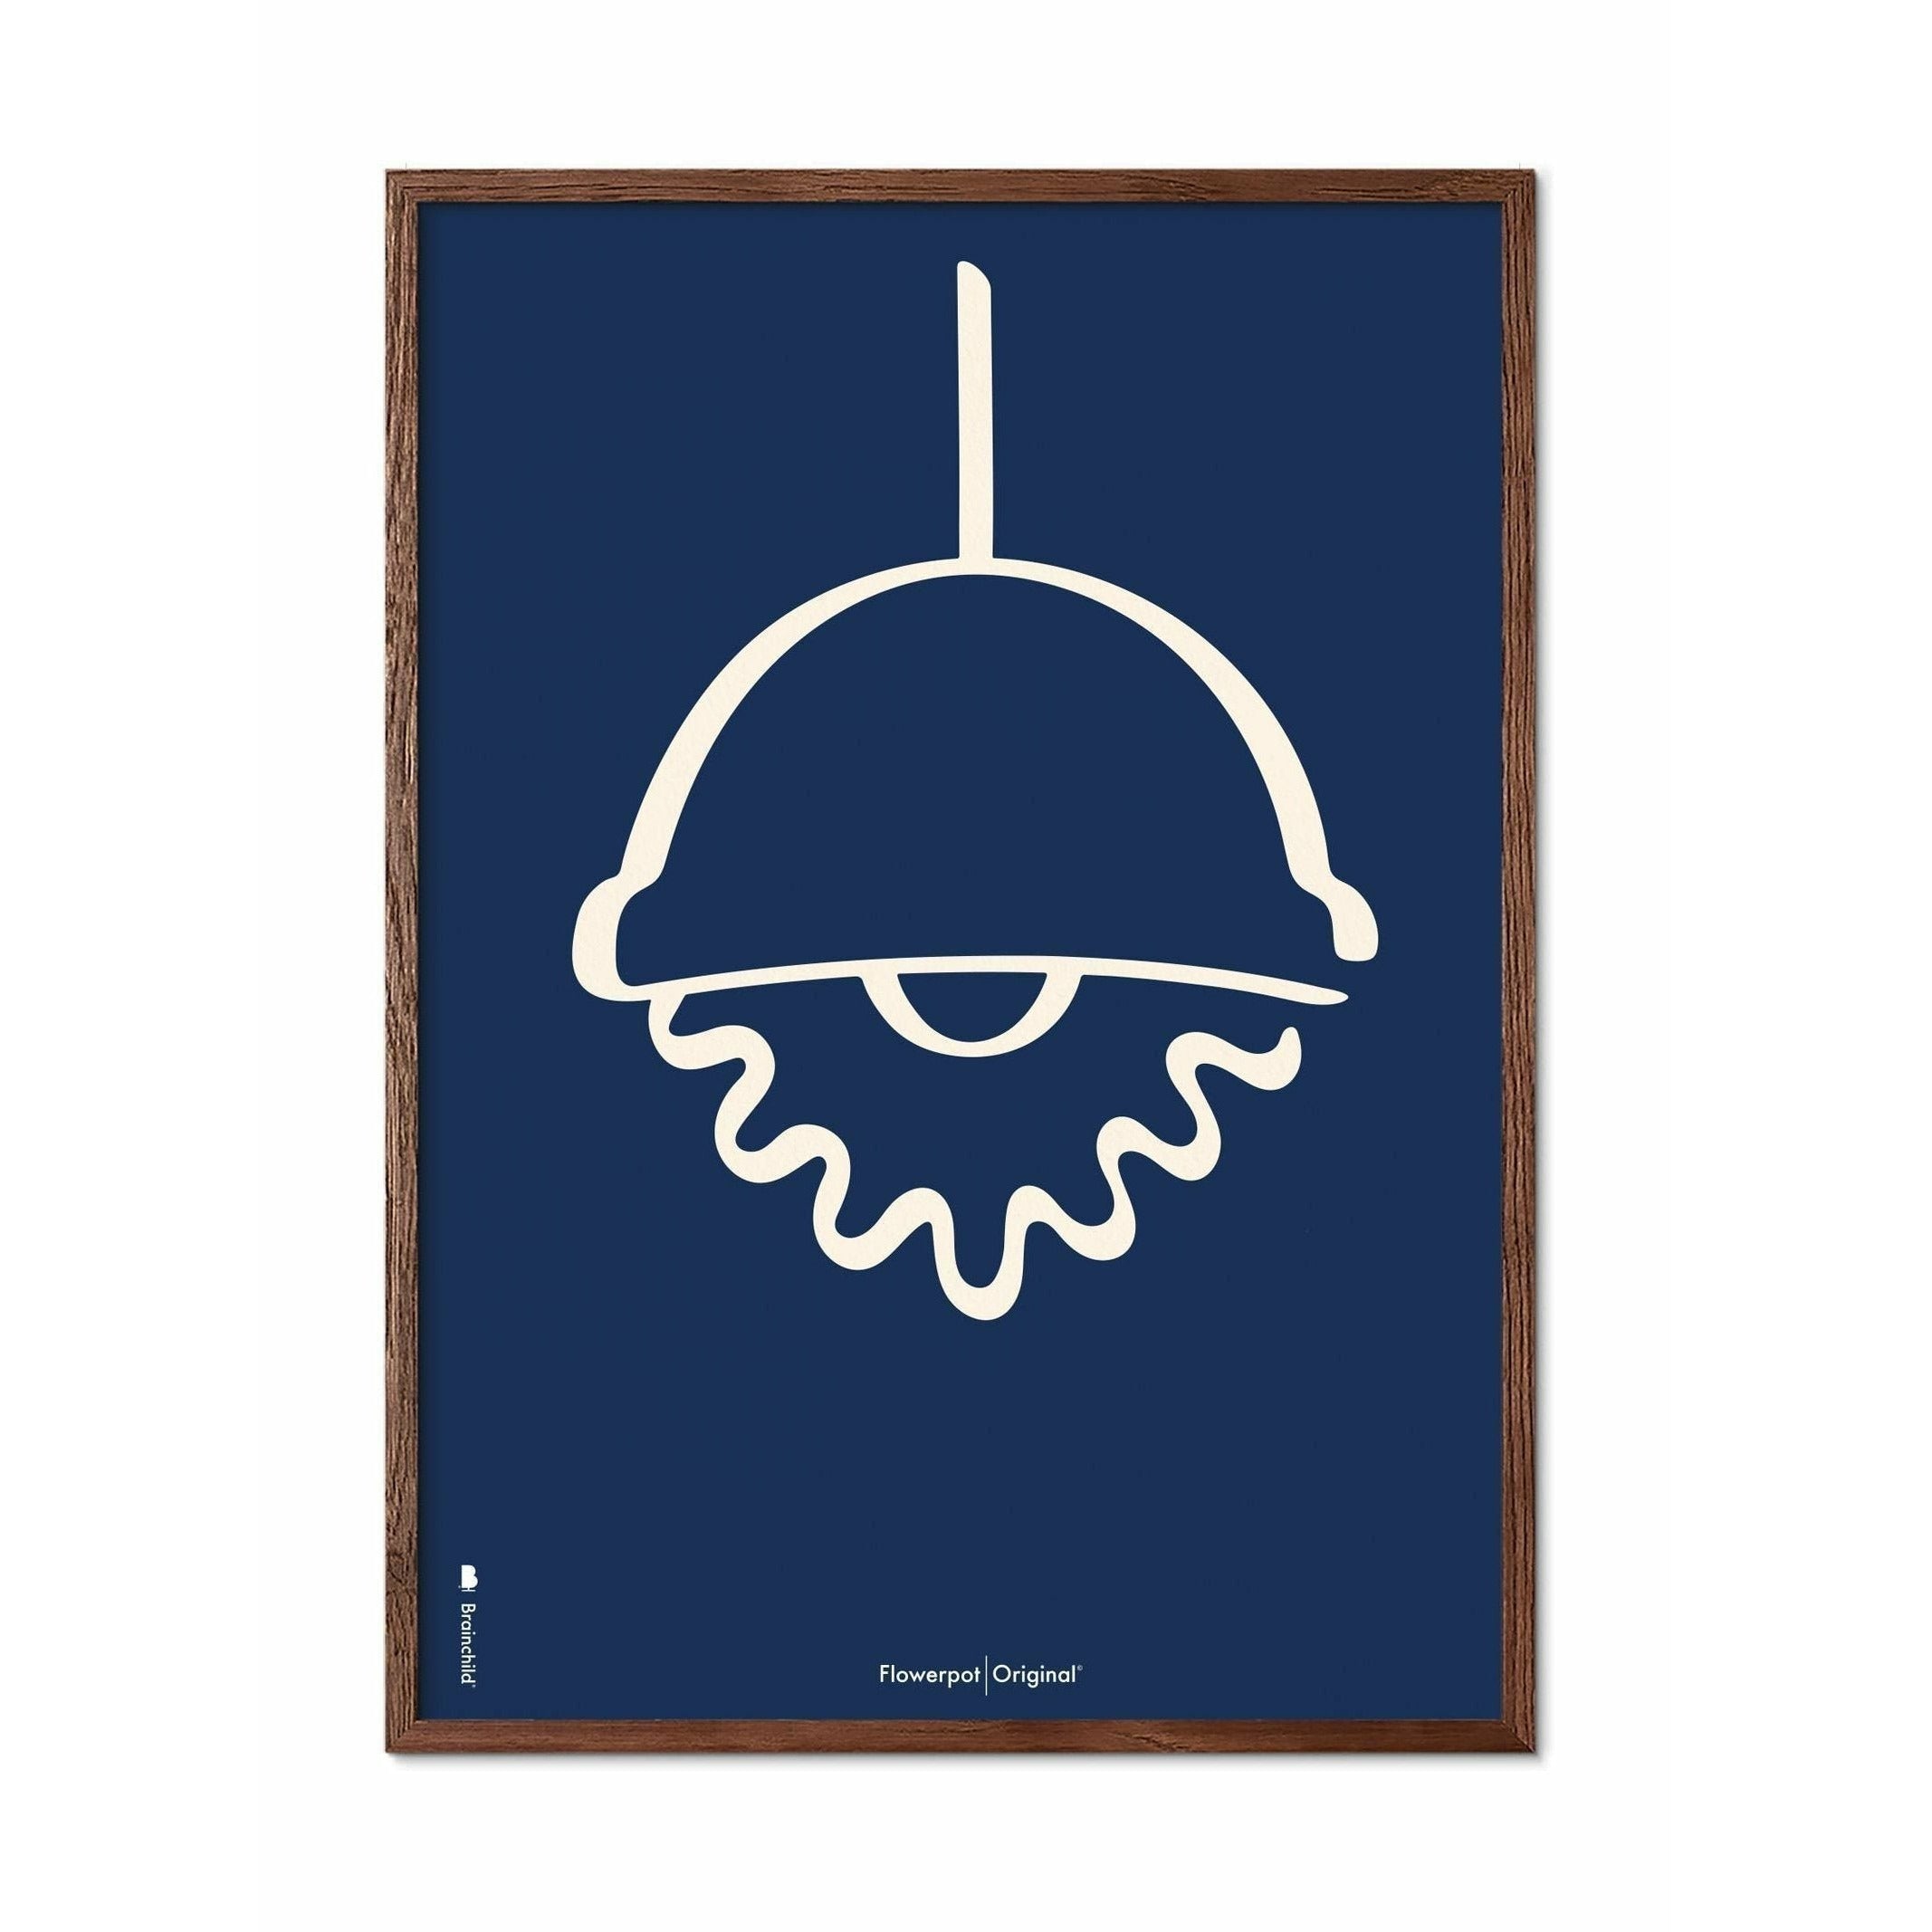 Brainchild Flowerpot Line Poster, Dark Wood Frame 50x70 Cm, Blue Background